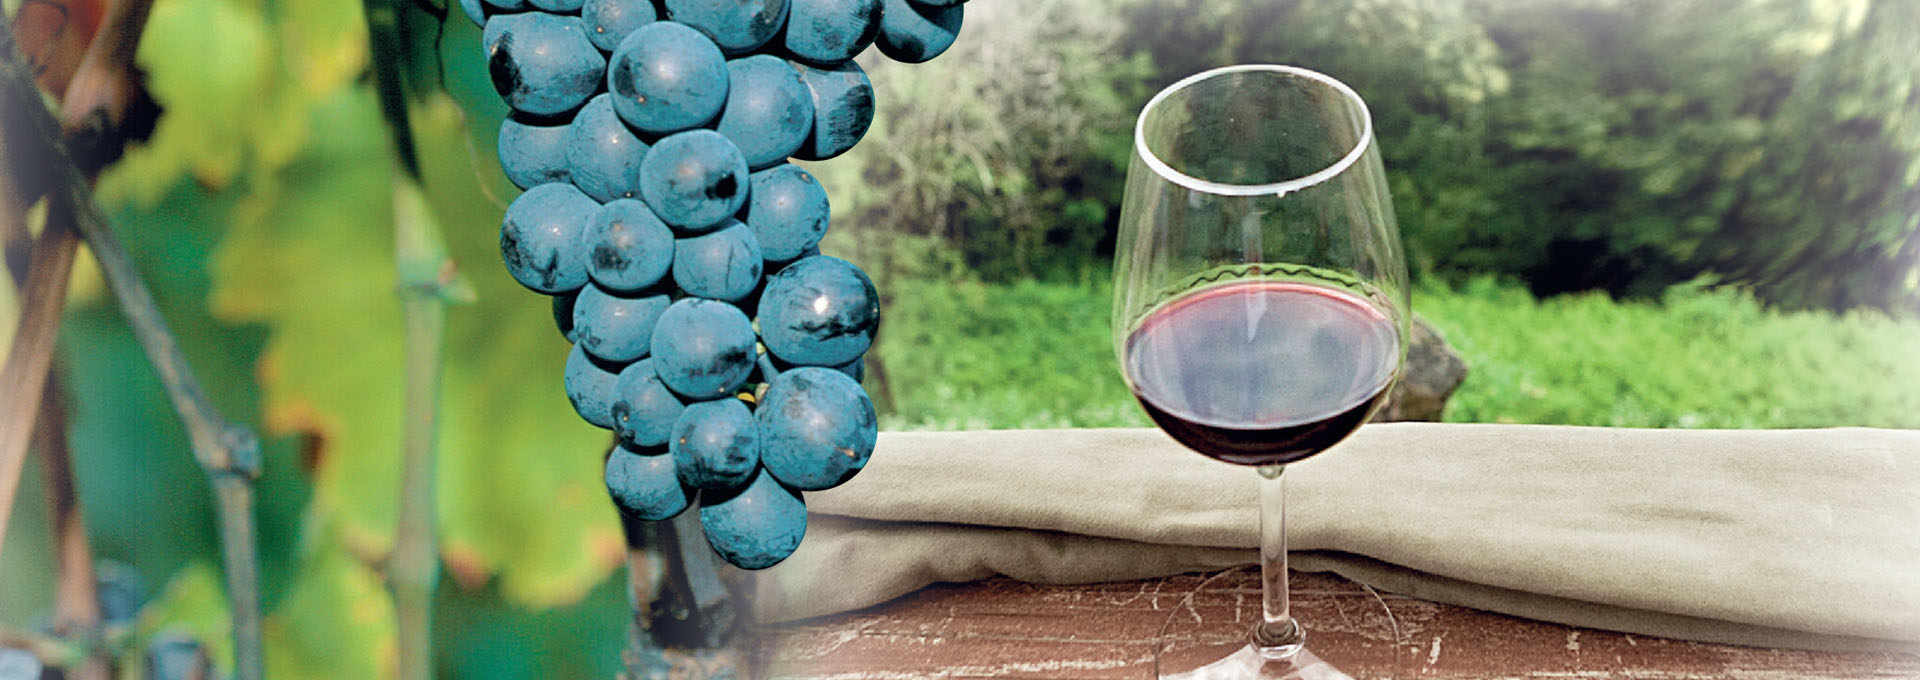 Refosco del Friuli, grapes and wine